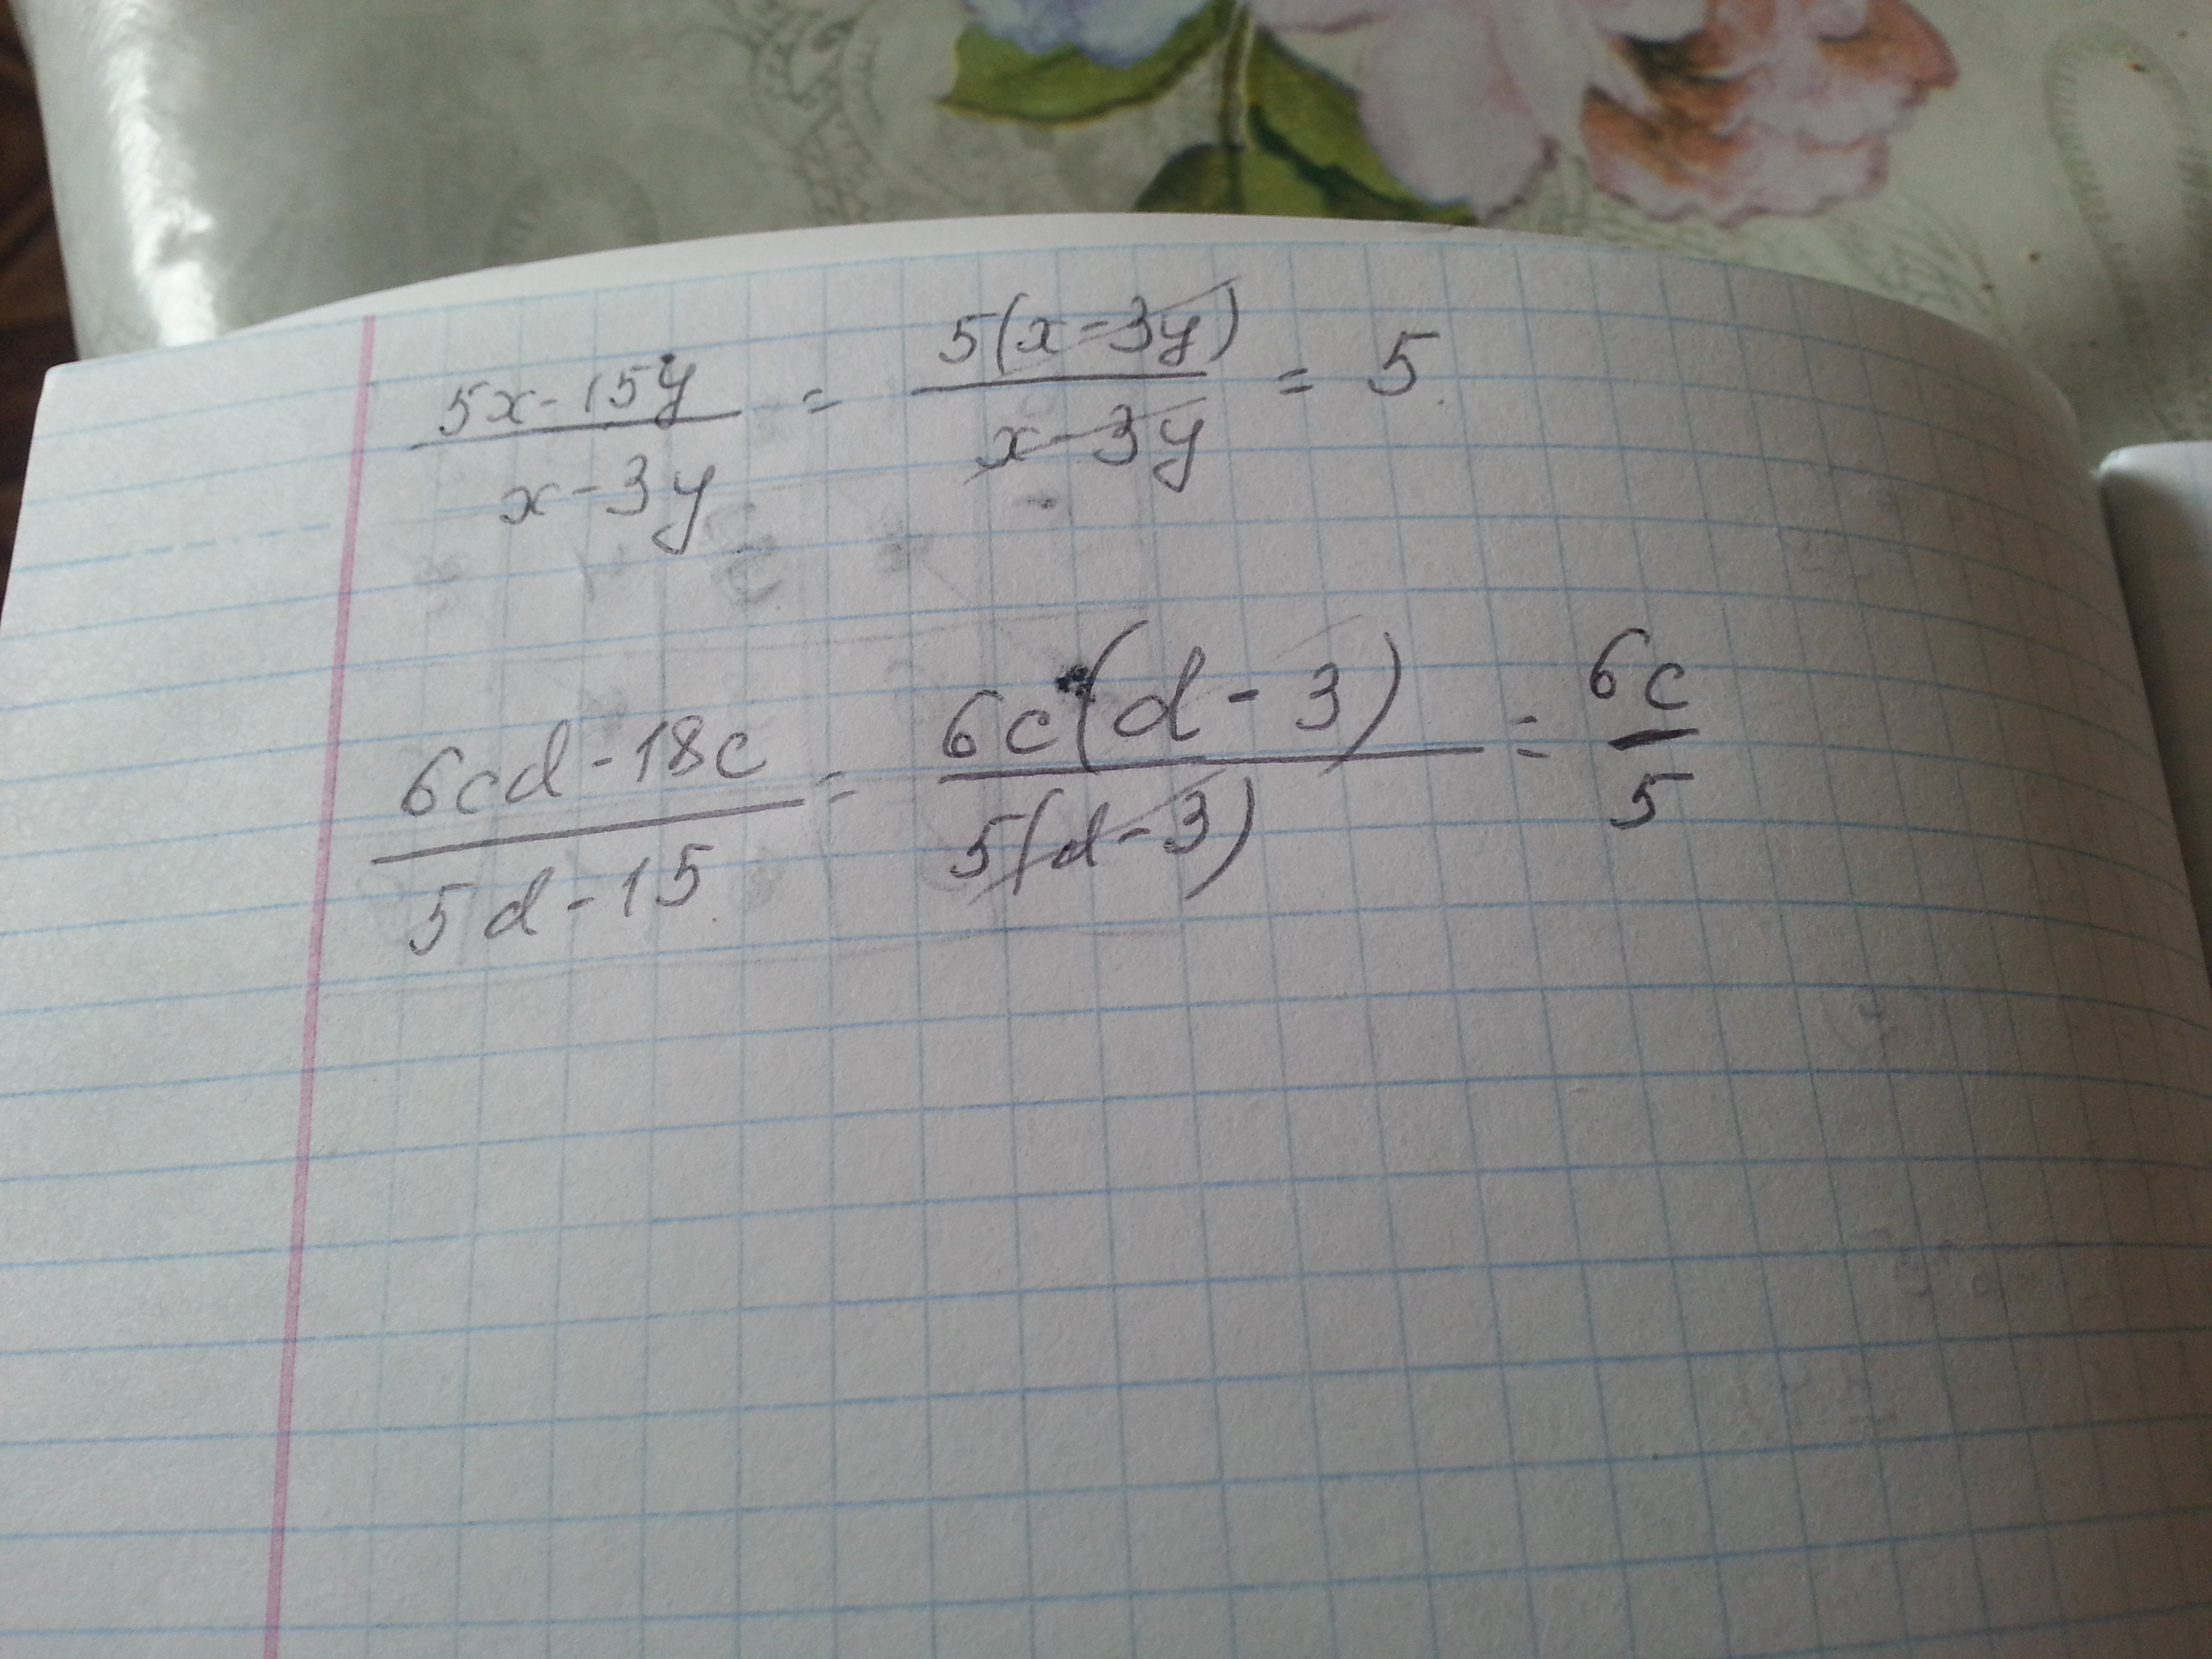 5x - 15y) / (x - 3y) = 5(x - 3y) / (x - 3y) = 5. 6cd - 18c) / (5d - 15) = 6...